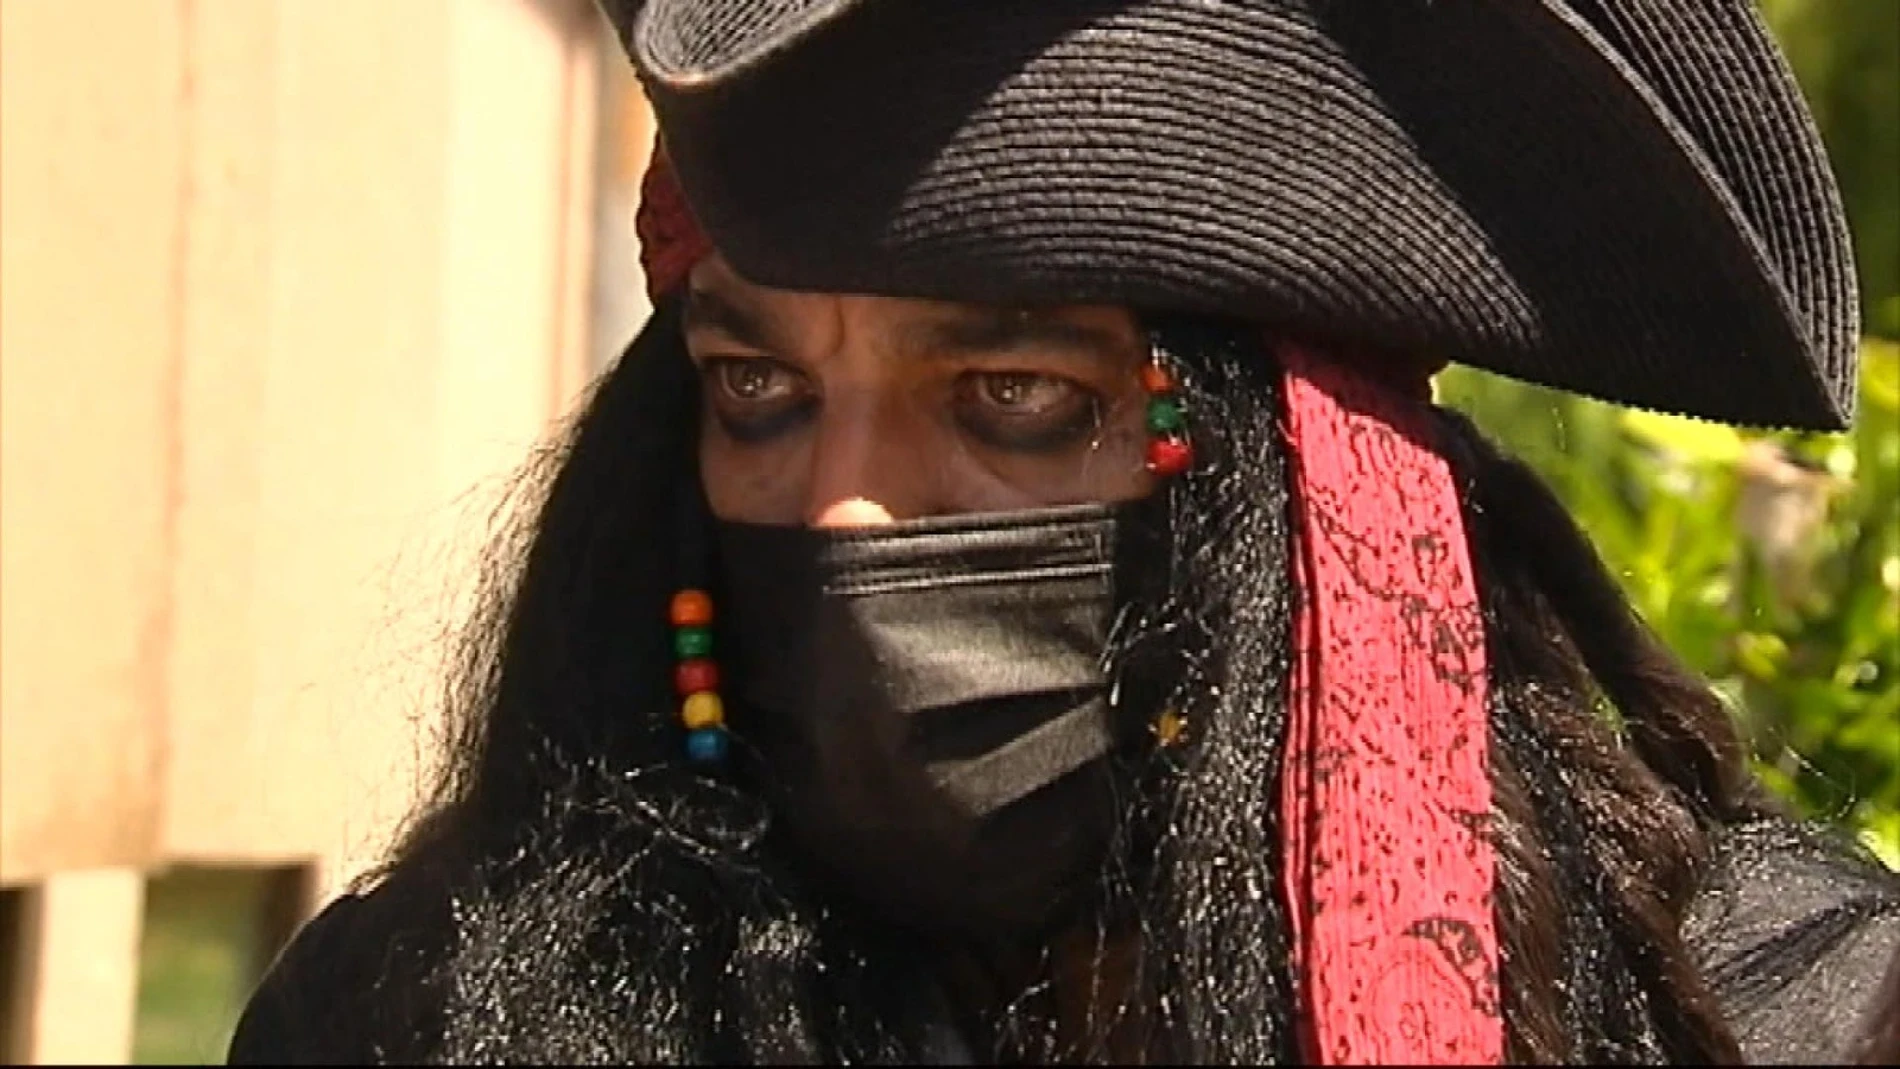 'Jack Sparrow' consigue casarse en Vigo